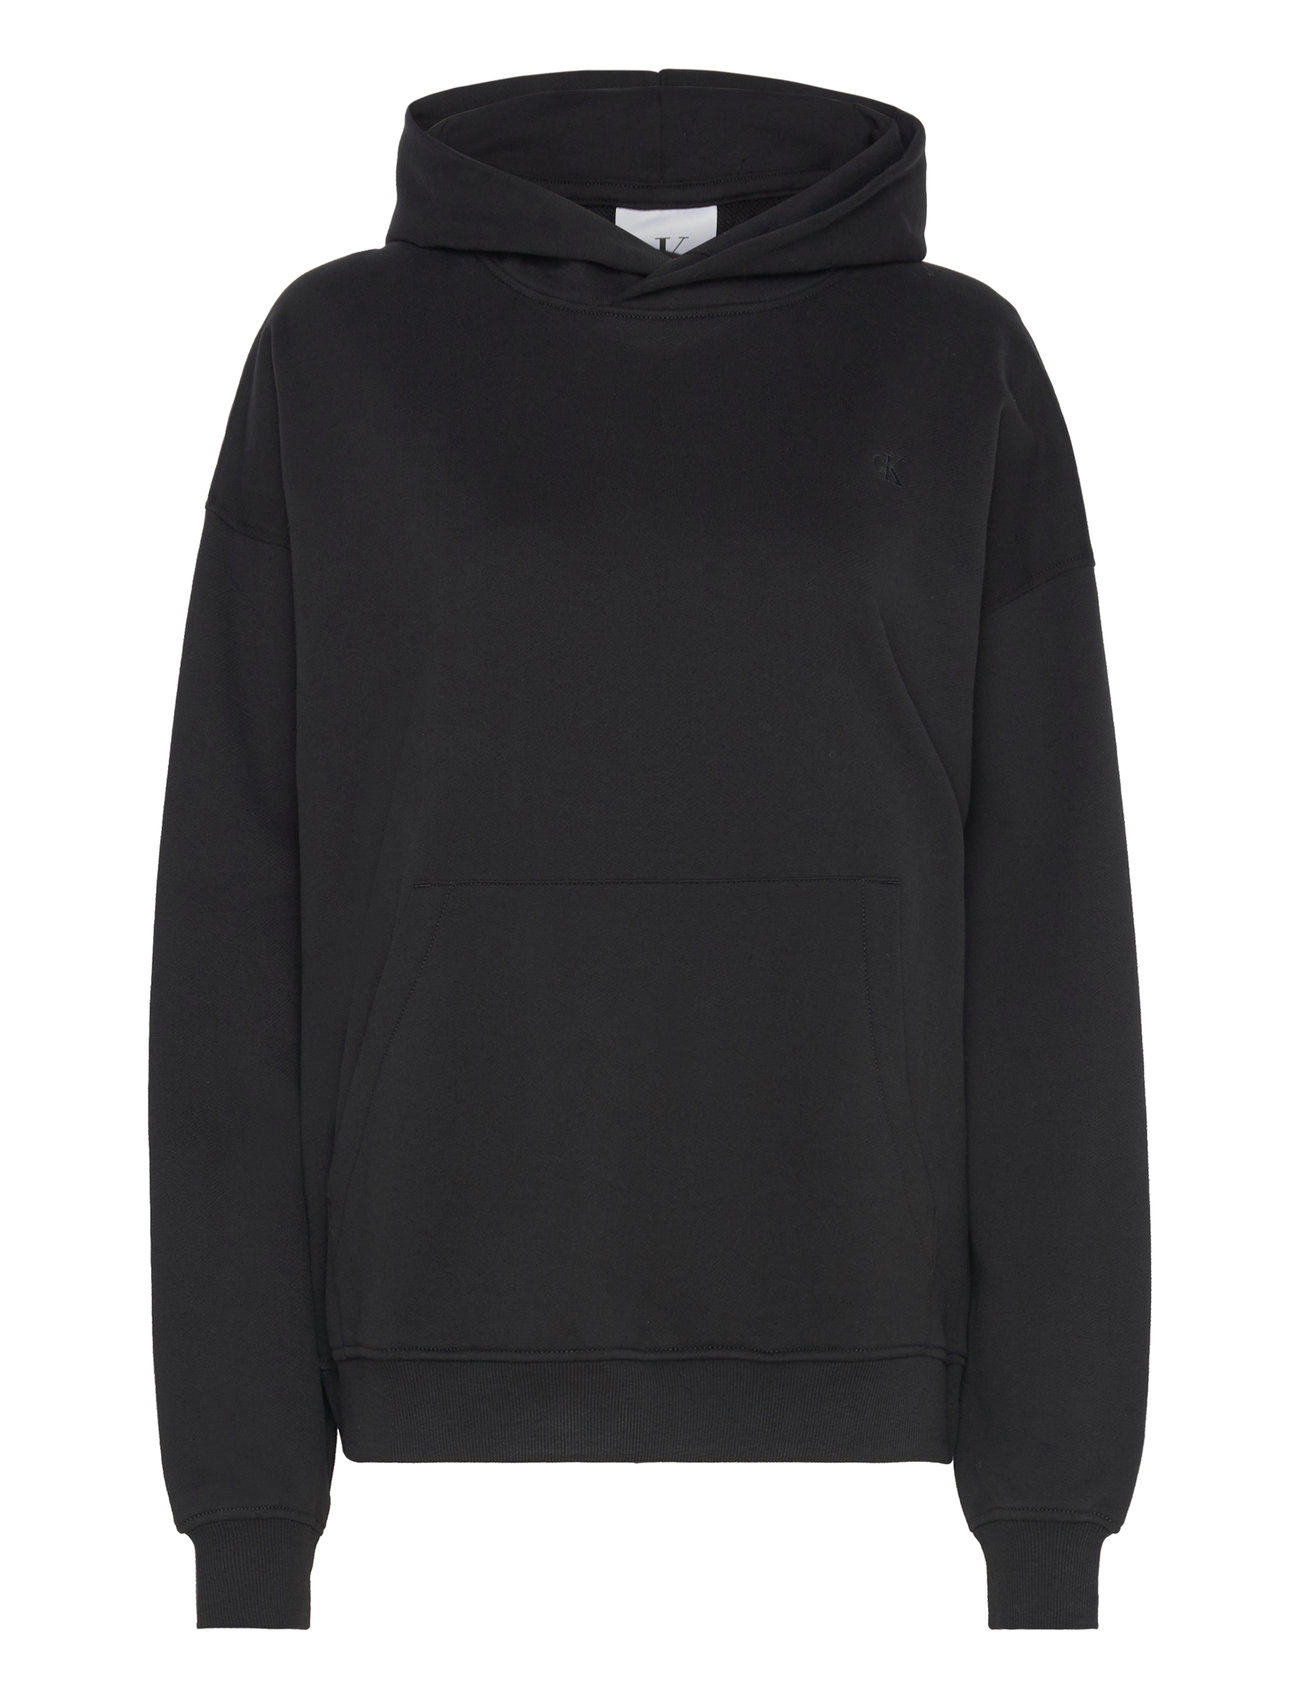 Box Graphic Relaxed Hoodie Tops Sweatshirts & Hoodies Hoodies Black Calvin Klein Jeans